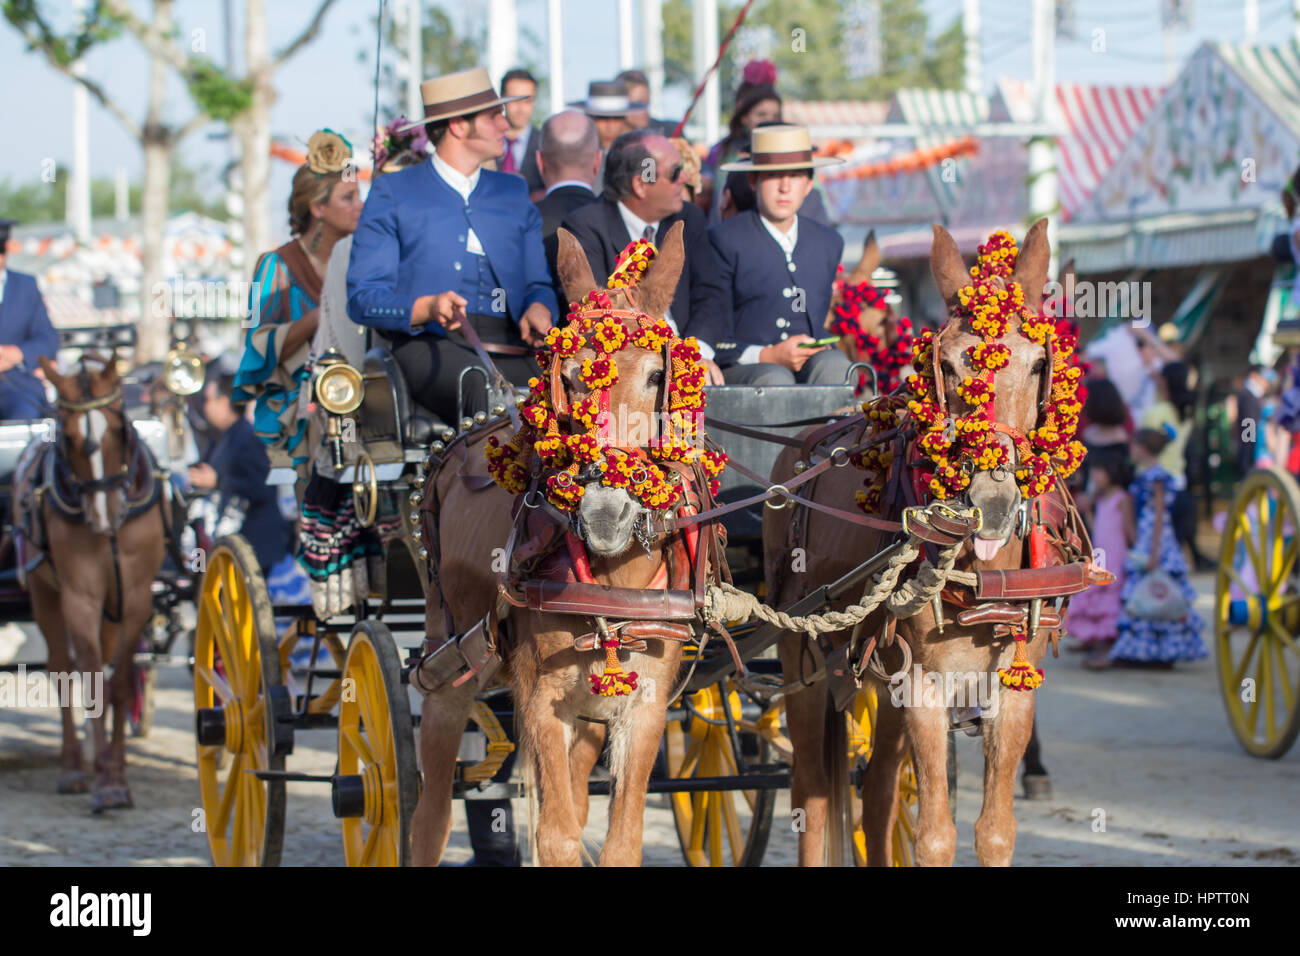 Sevilla, España - APR, 25: gente vestida con trajes típicos carruajes a caballo en la feria de abril, 25 de abril de 2014 en Sevilla, España. Foto de stock